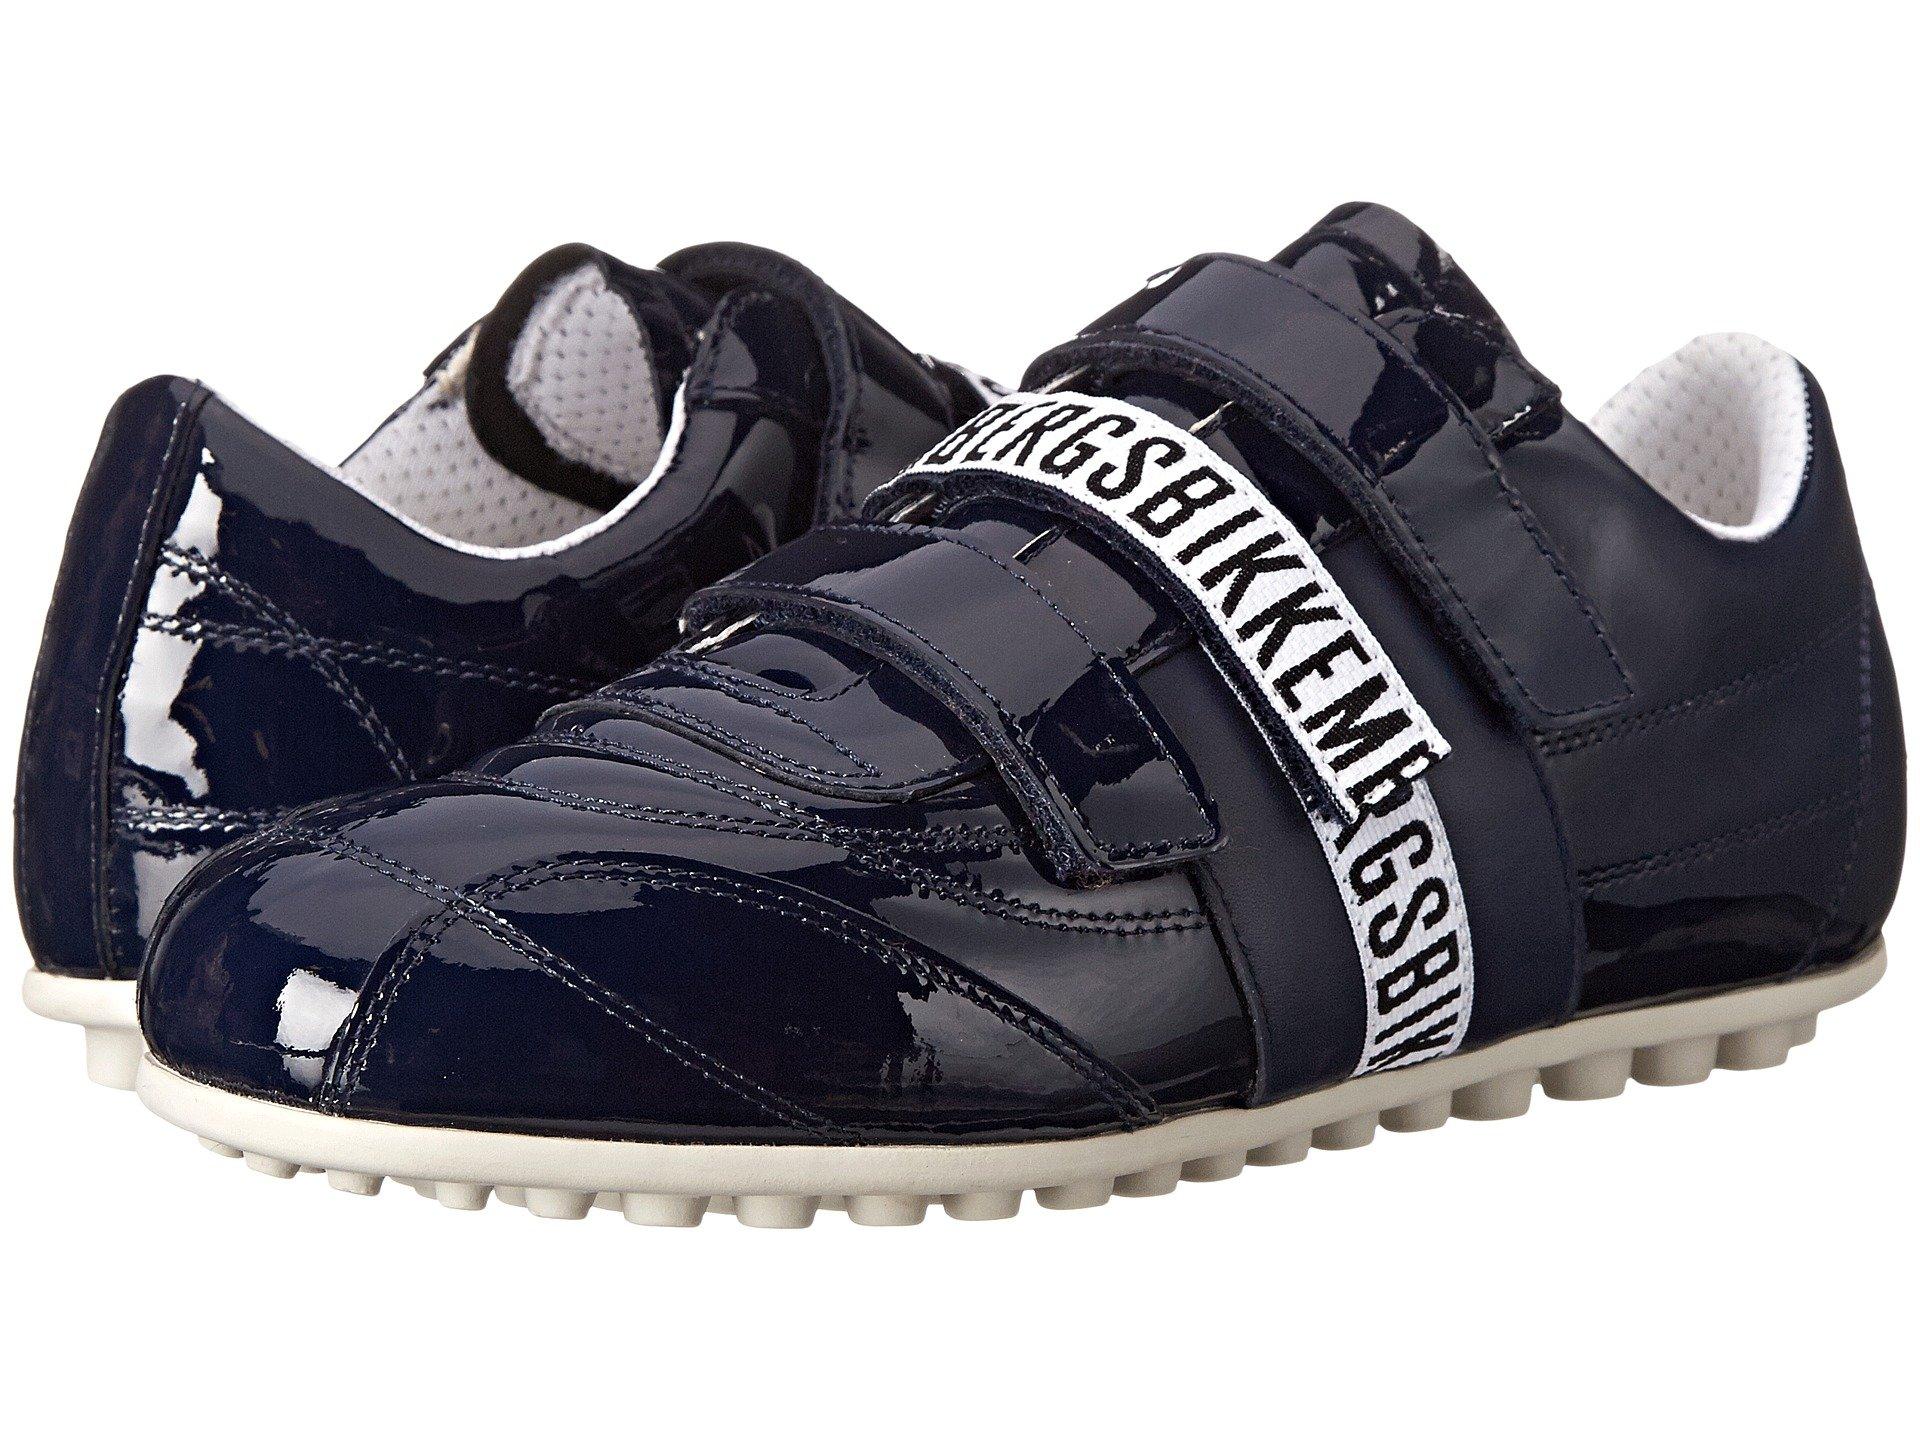 Bikkembergs Soccer 526 Low Sneaker In Blue Patent | ModeSens